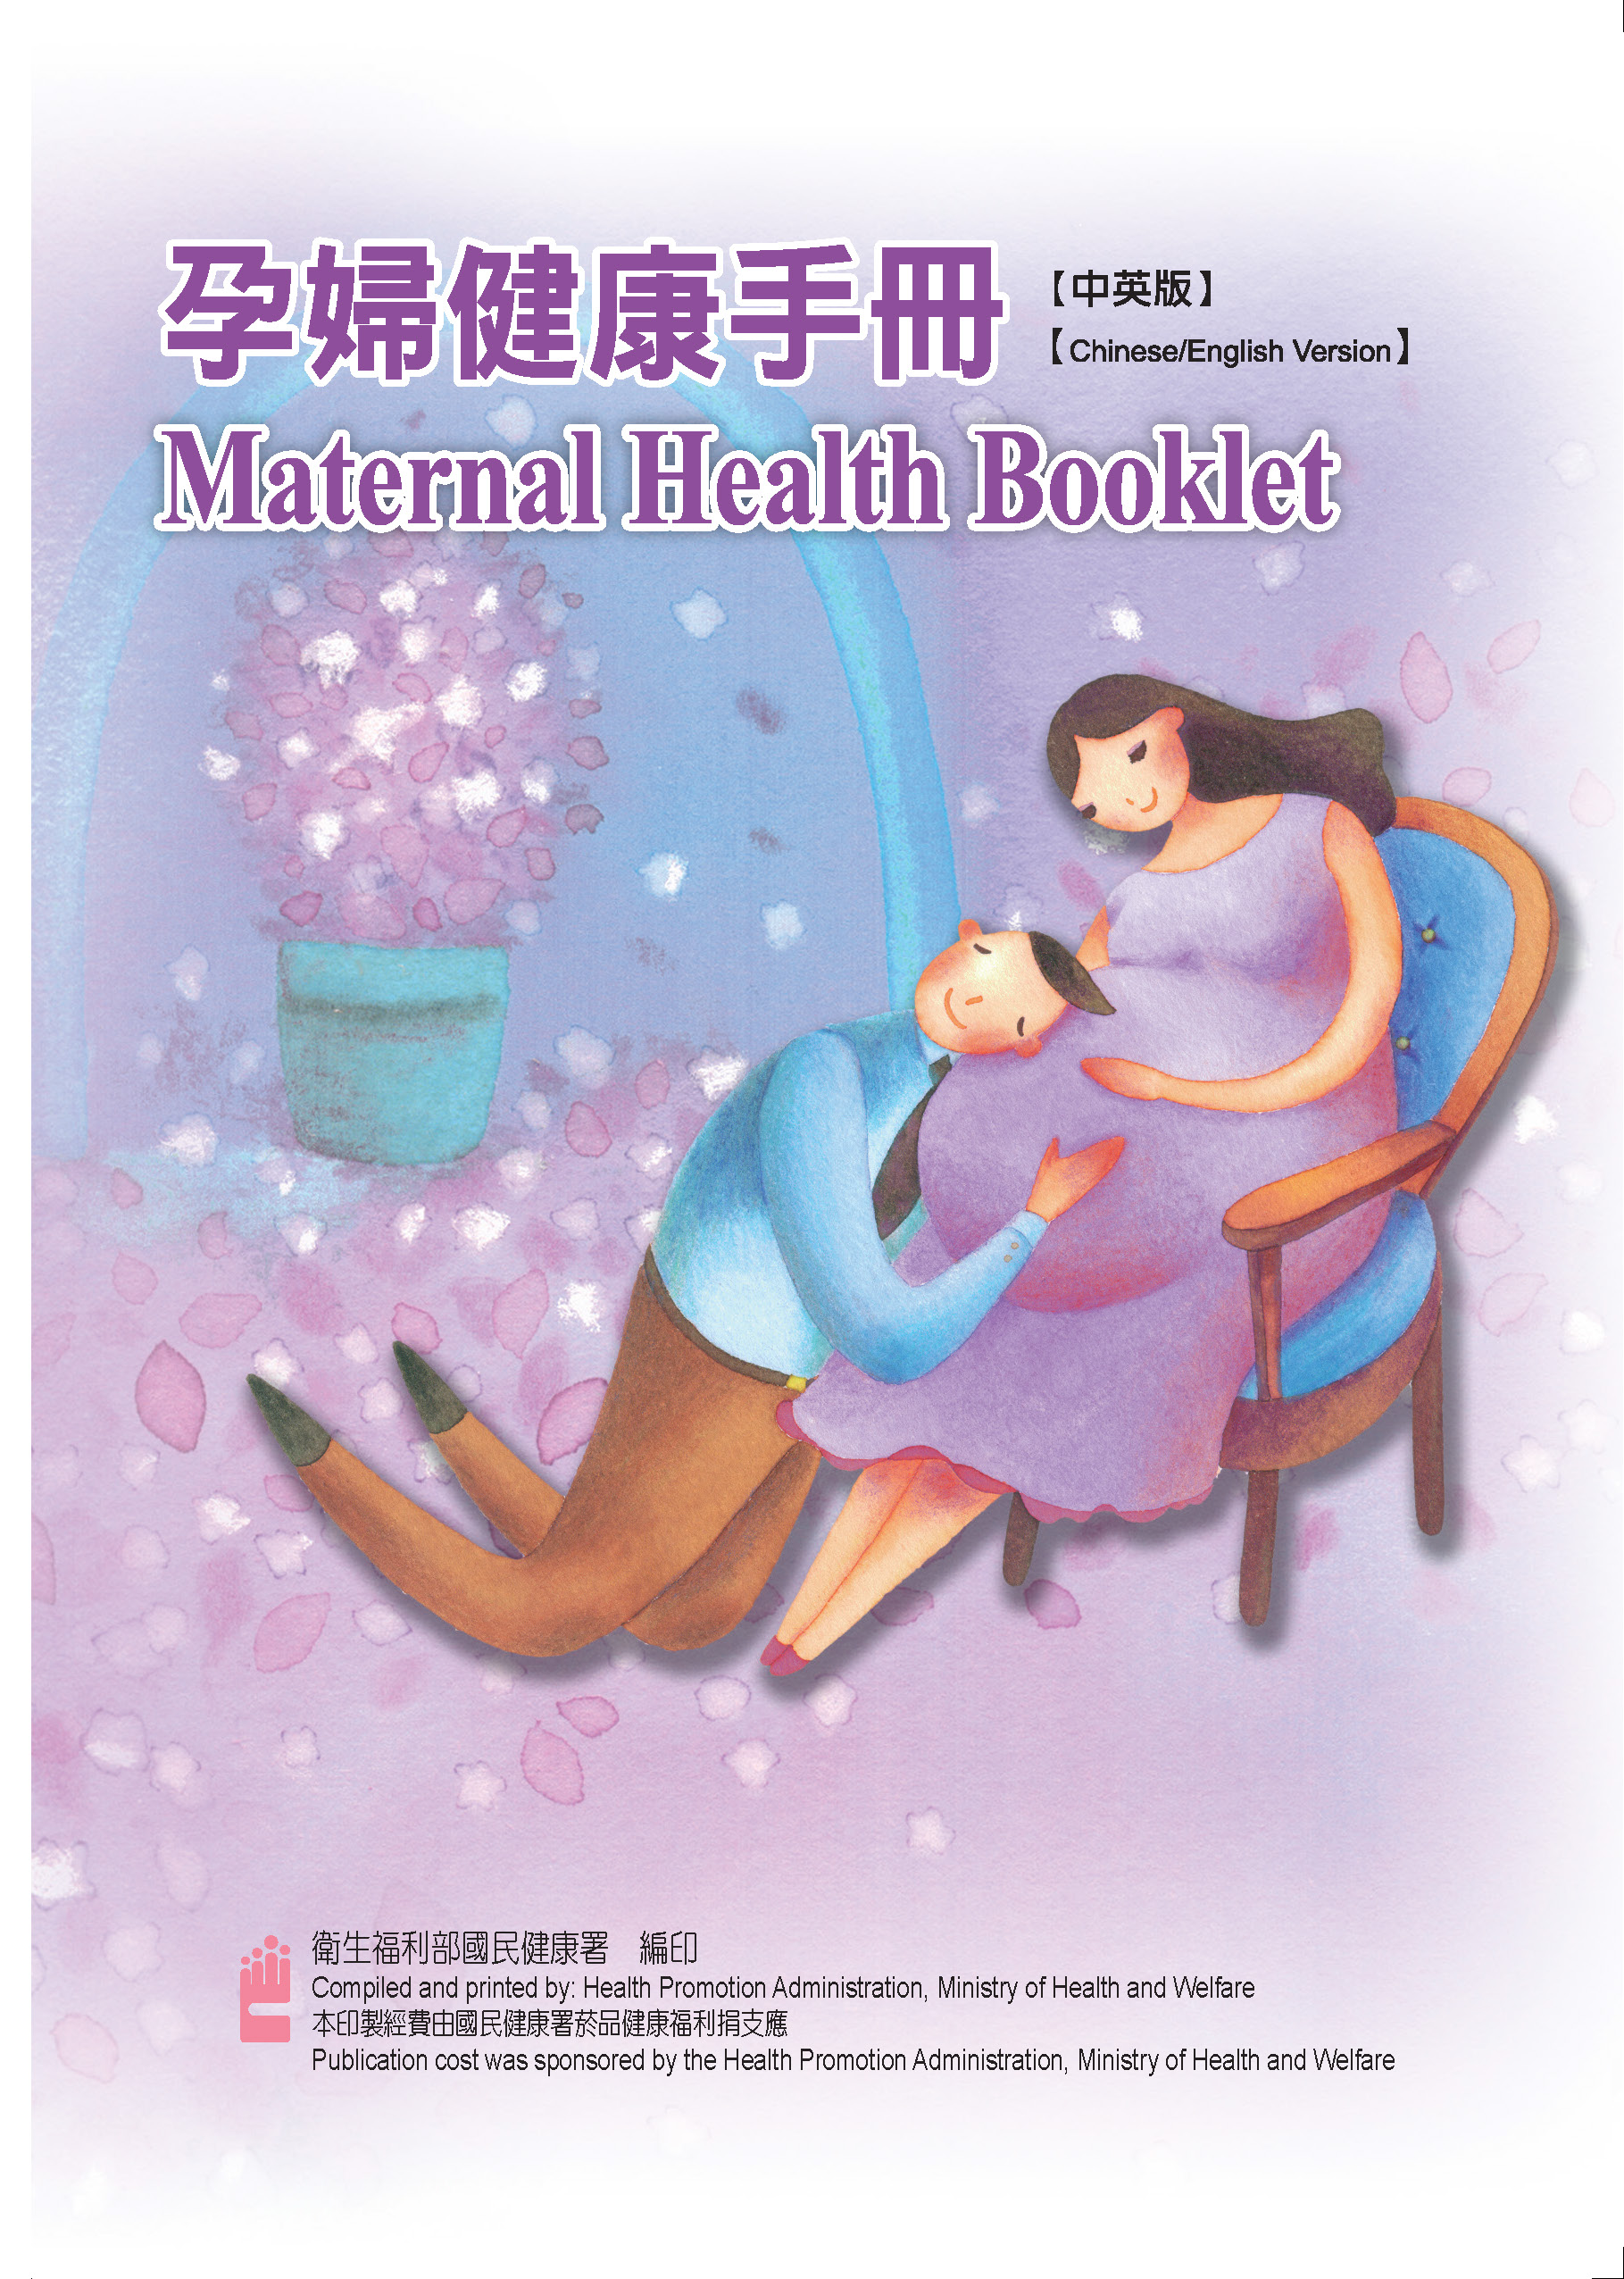 孕婦健康手冊-中英版(106年)文章照片